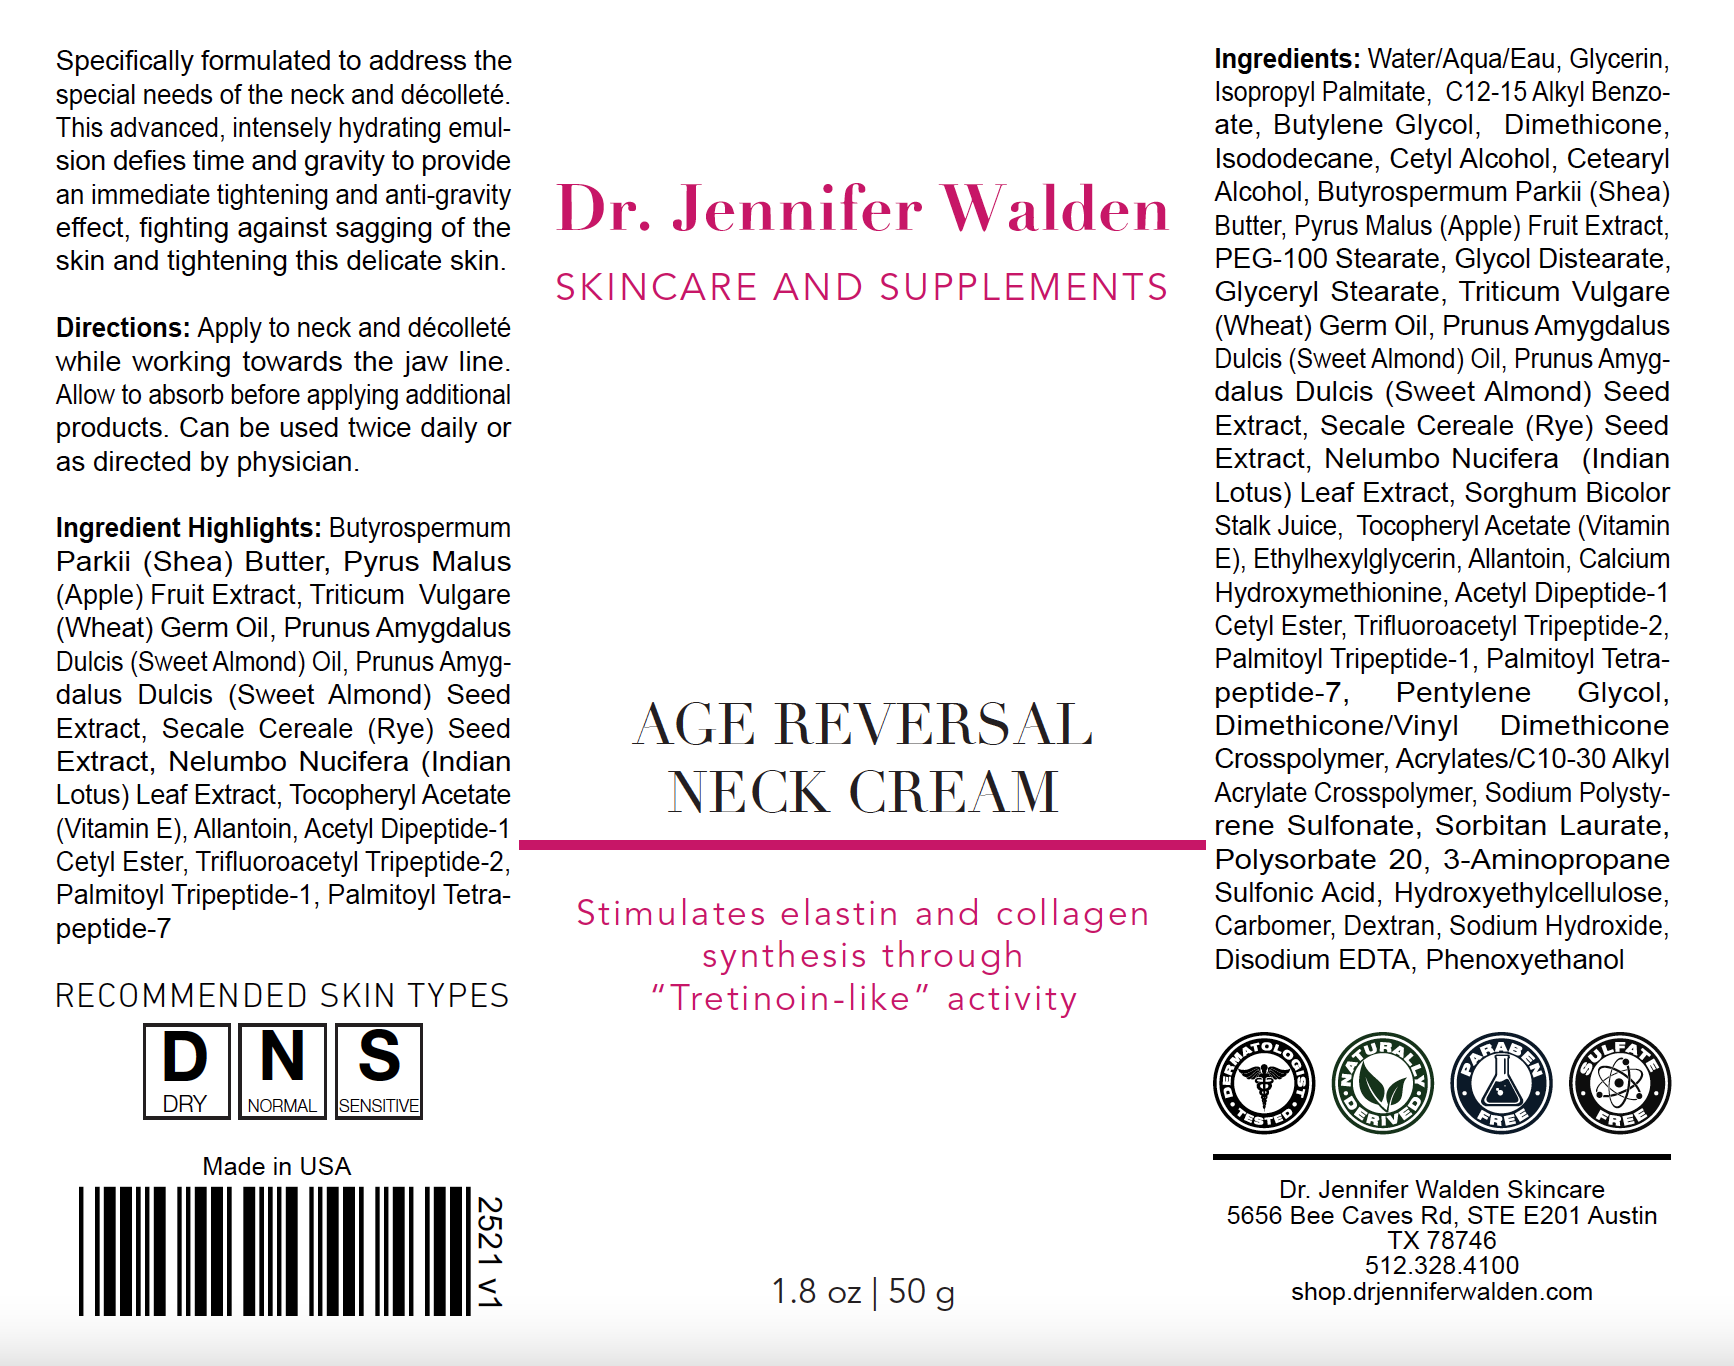 Age Reversal Neck Cream-2